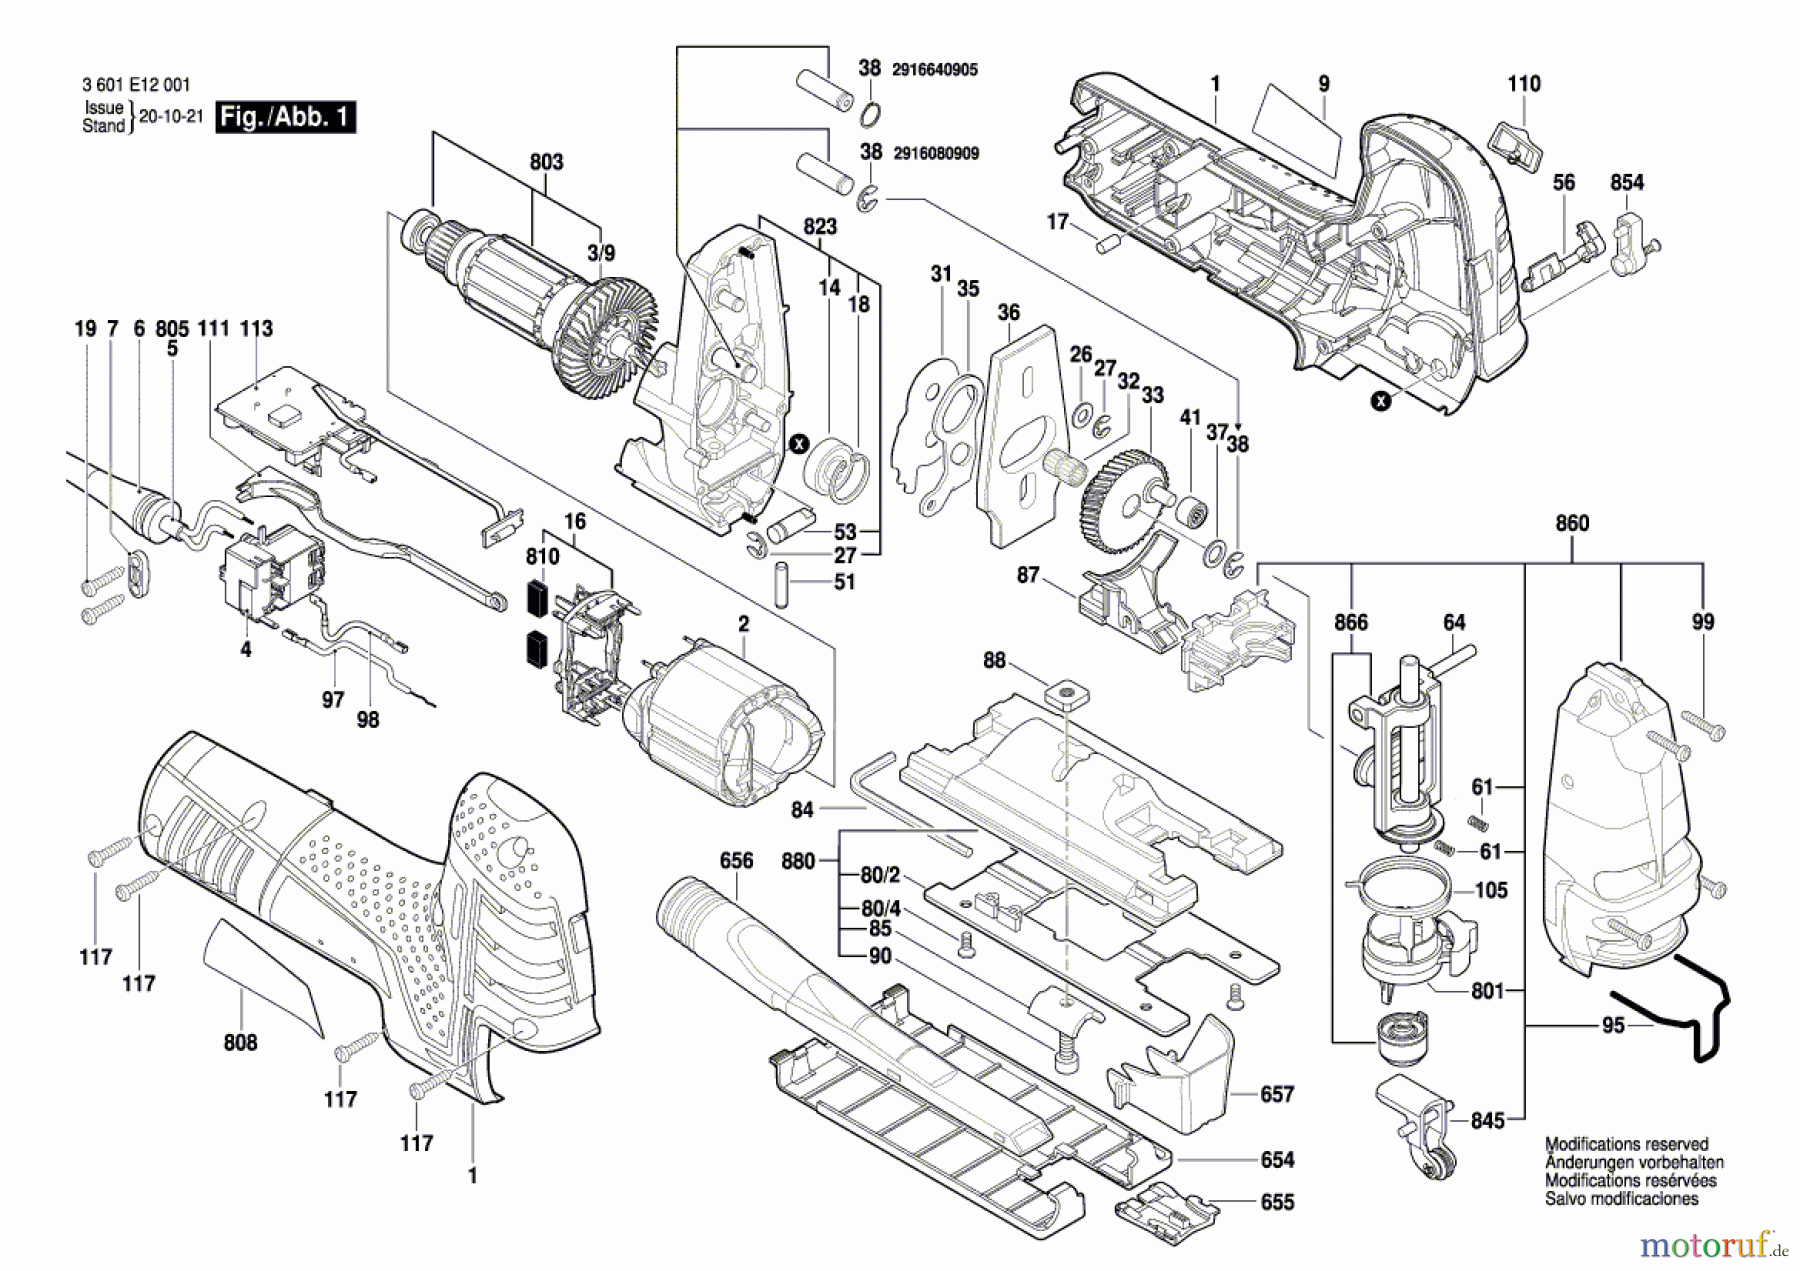  Bosch Werkzeug Stichsäge GST 150 CE Seite 1